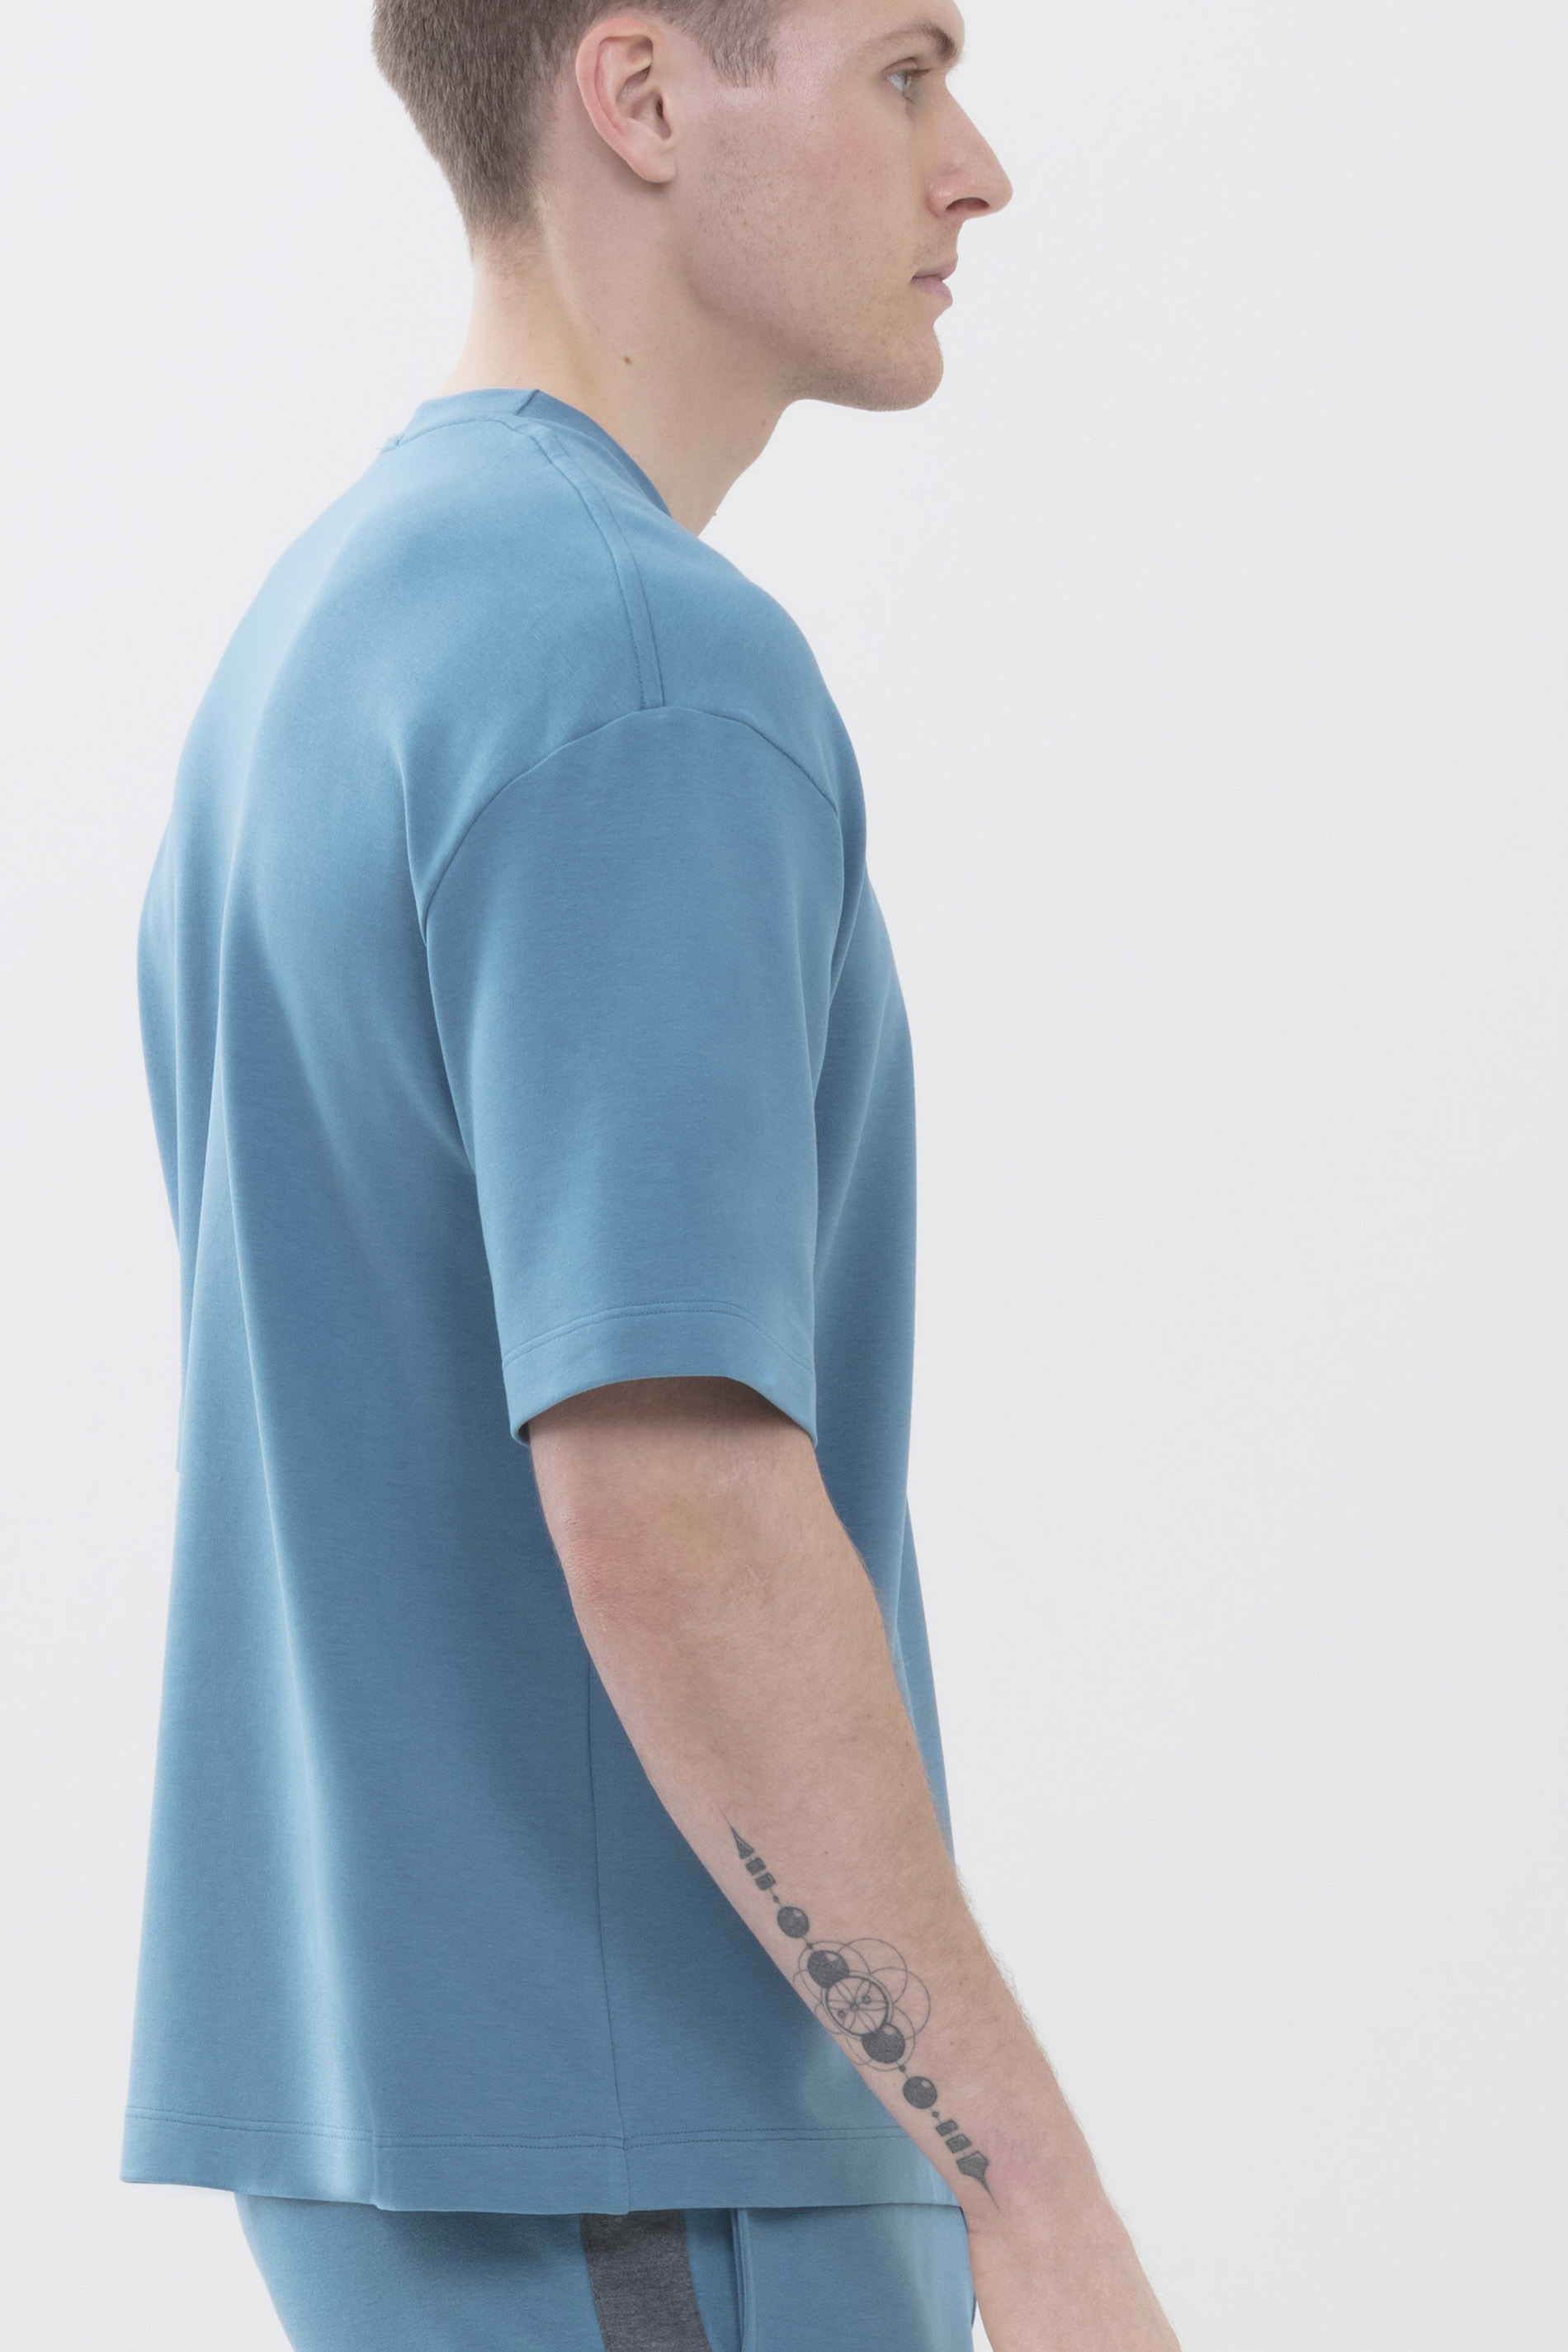 T-Shirt Yale Blue Serie Enjoy Colour Detailansicht 02 | mey®